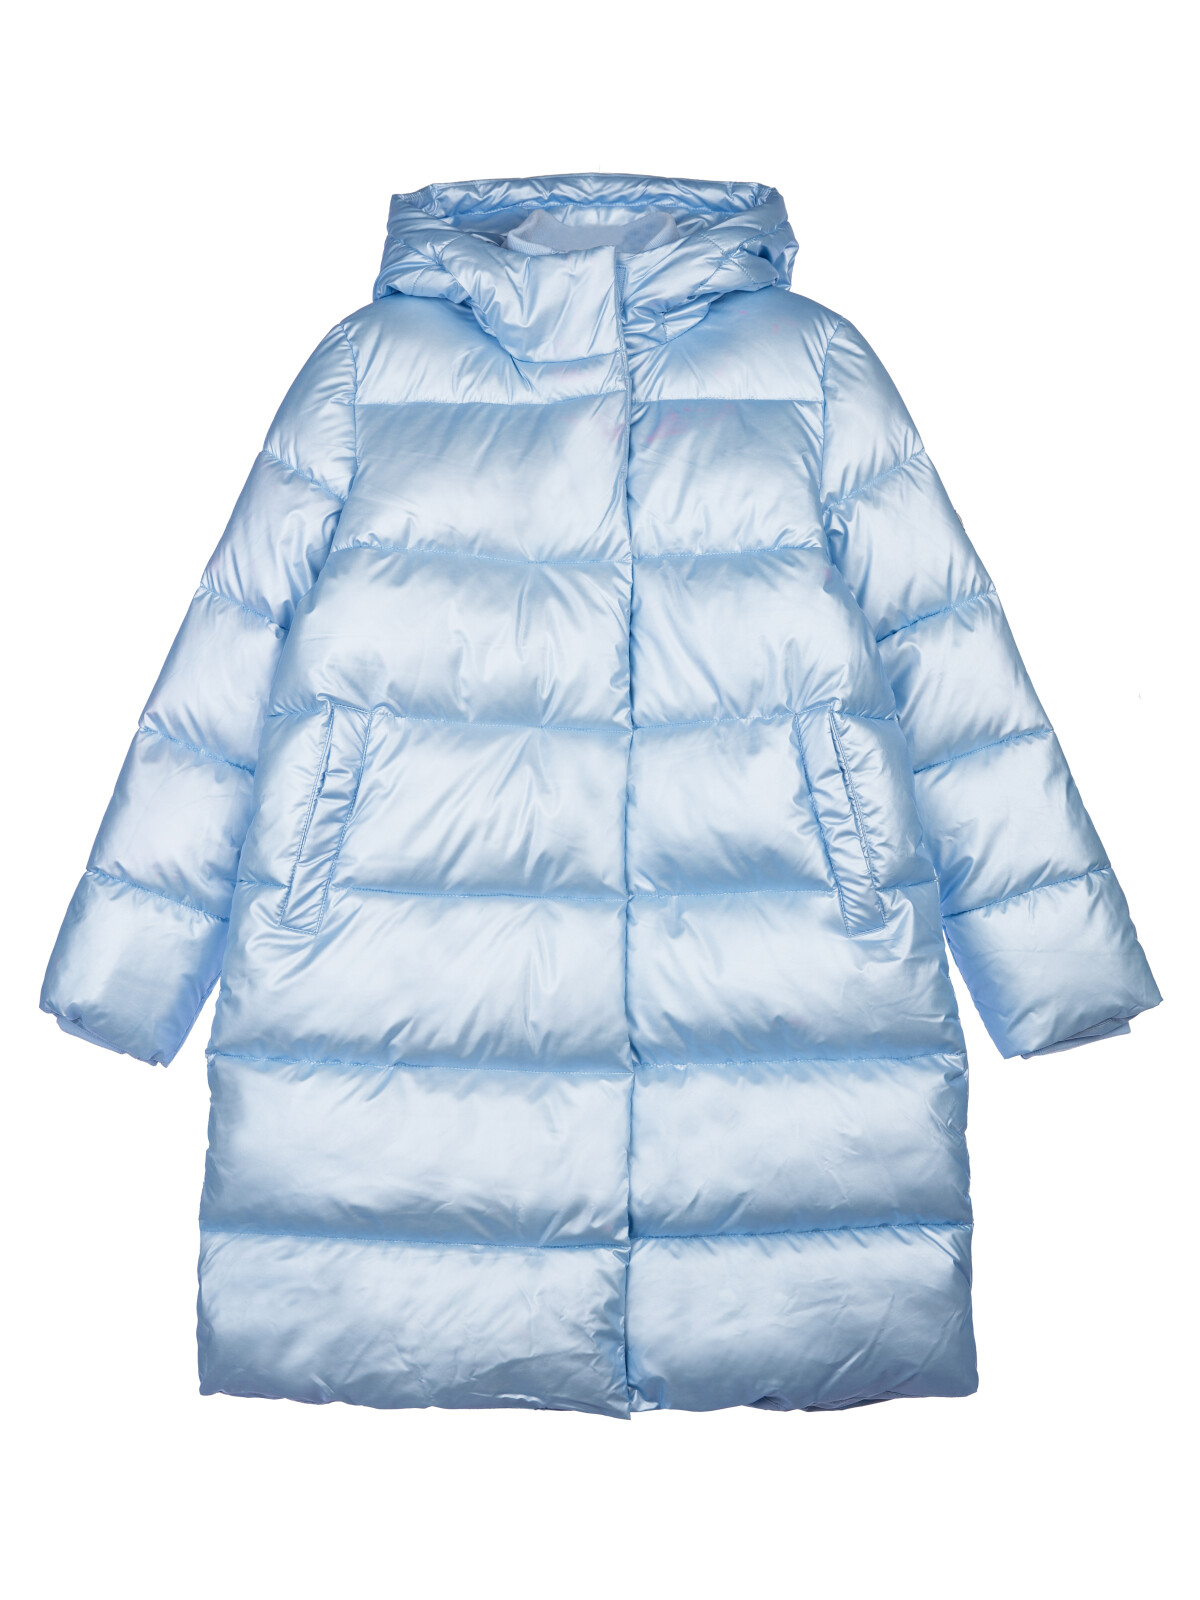 Пальто текстильное с полиуретановым покрытием для девочек PlayToday, голубой, 164